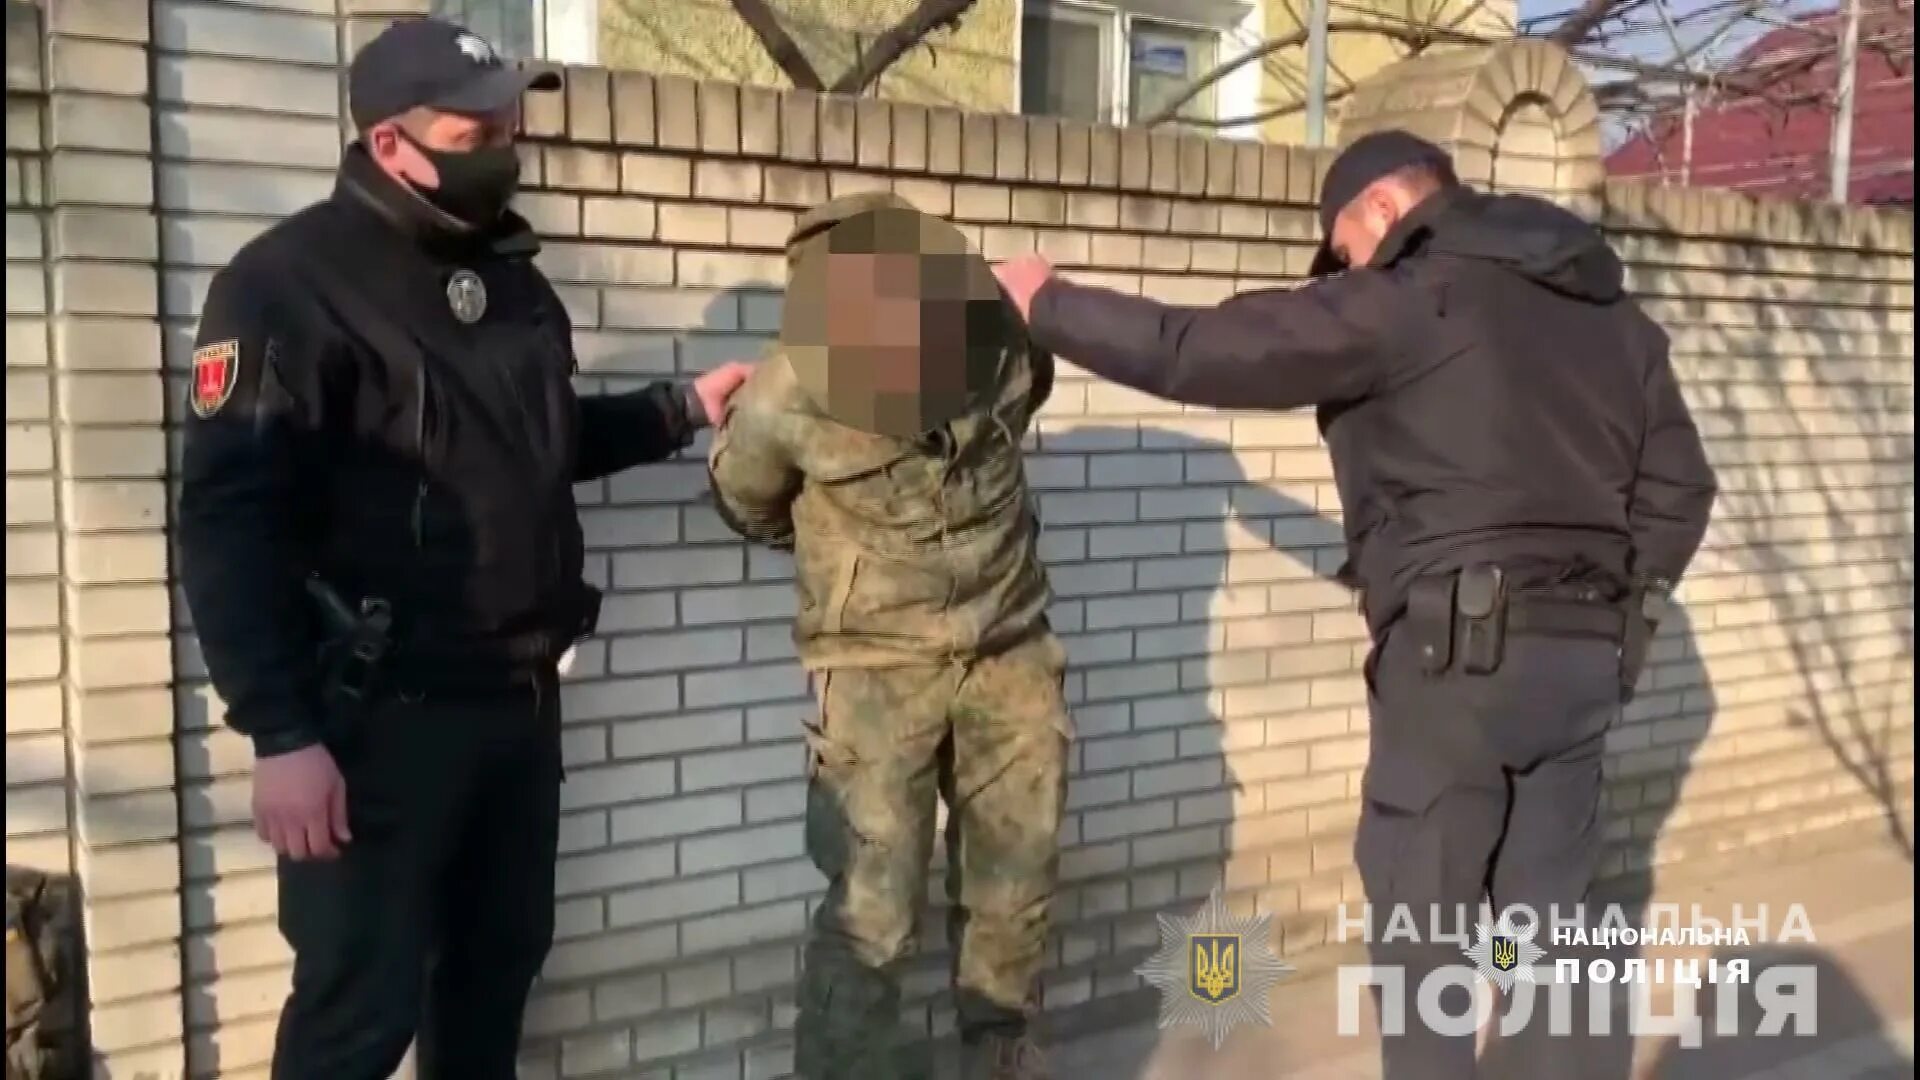 Мужчина угрожал пистолетом. Украинцы с оружием расстреливают мужика. Украинцы расстреляли прохожего. Полицейский револьвер в руке. Мужик угрожает пистолетом.